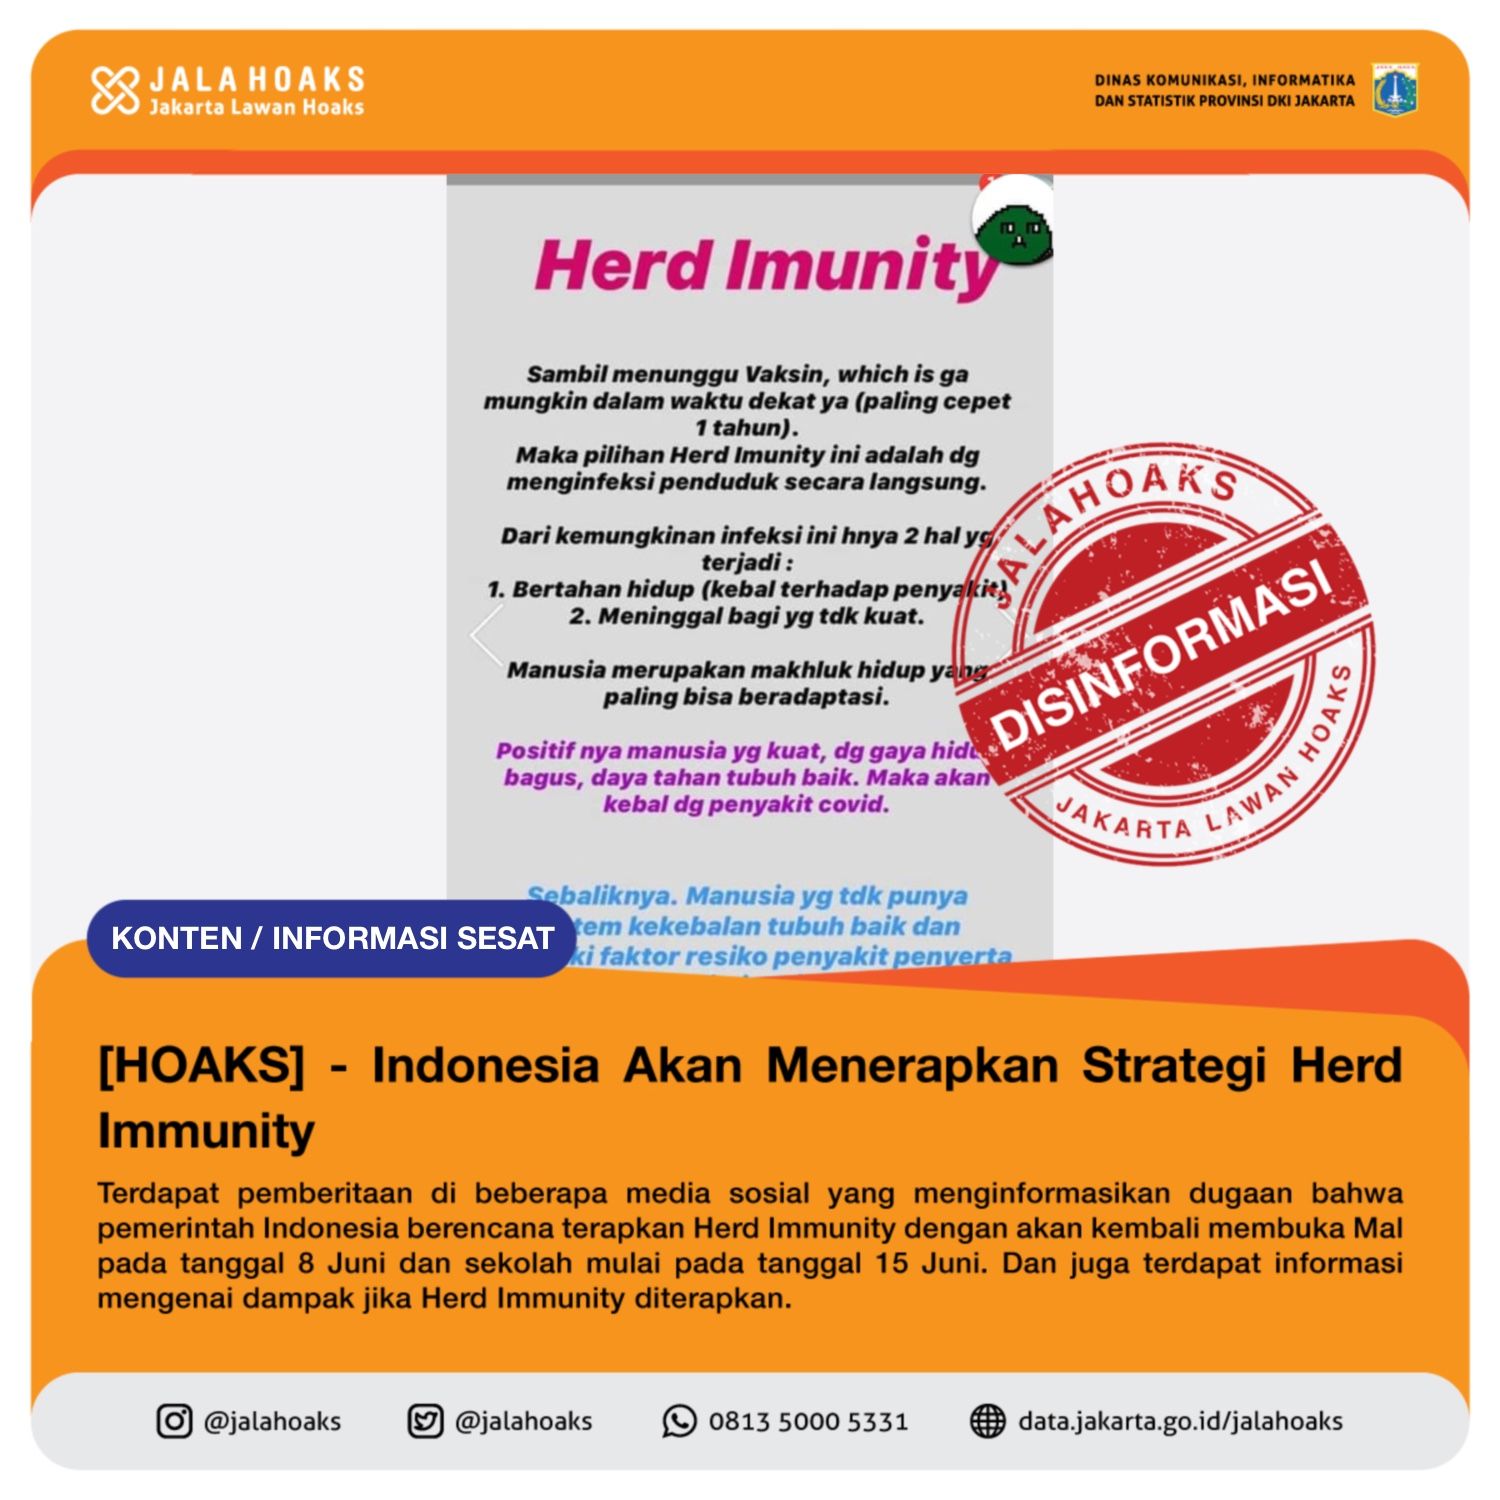 DISINFORMASI klaim informasi bahwa pemerintah Indonesia berencana menerapkan Herd Immunity.*